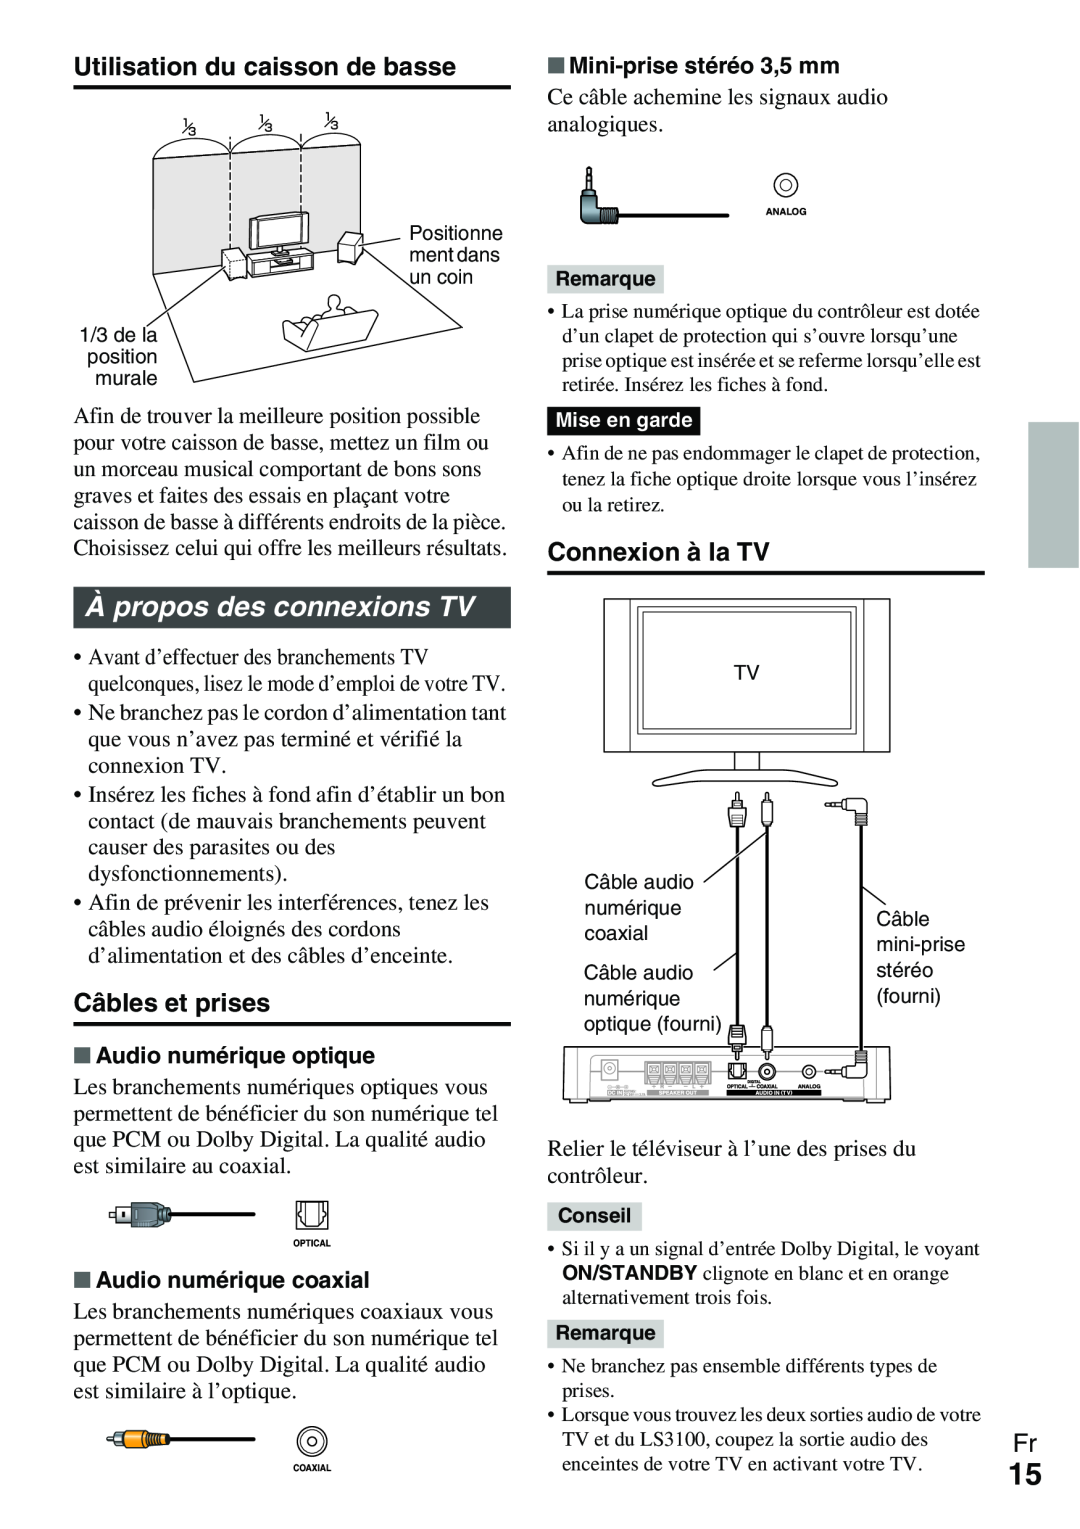 Onkyo Ls 3100 manual Àpropos des connexions TV, Utilisation du caisson de basse, Connexion à la TV, Câbles et prises 